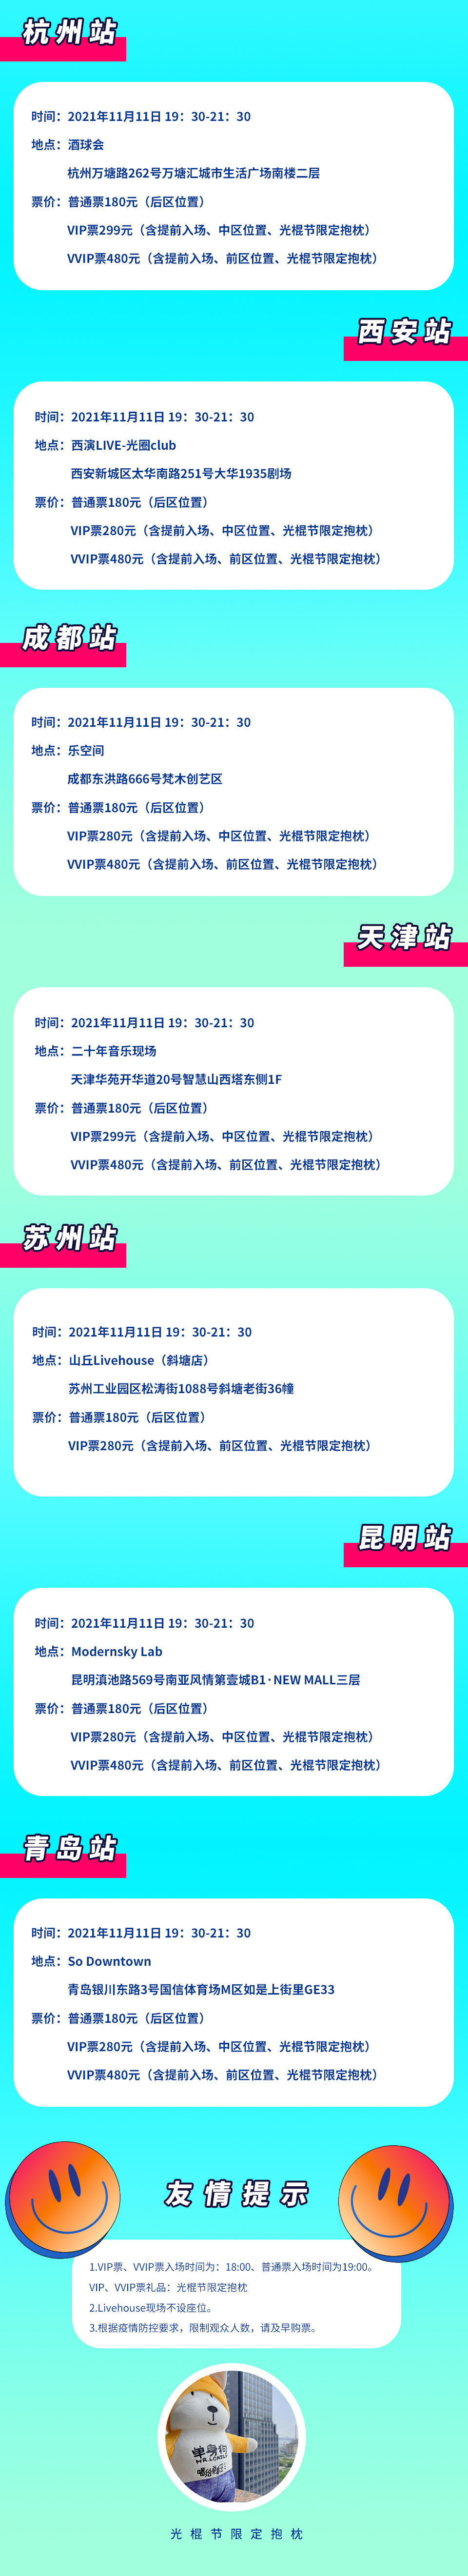 2021光棍节“唱给单身汪”演唱会-贵族狂欢不孤单-广州站